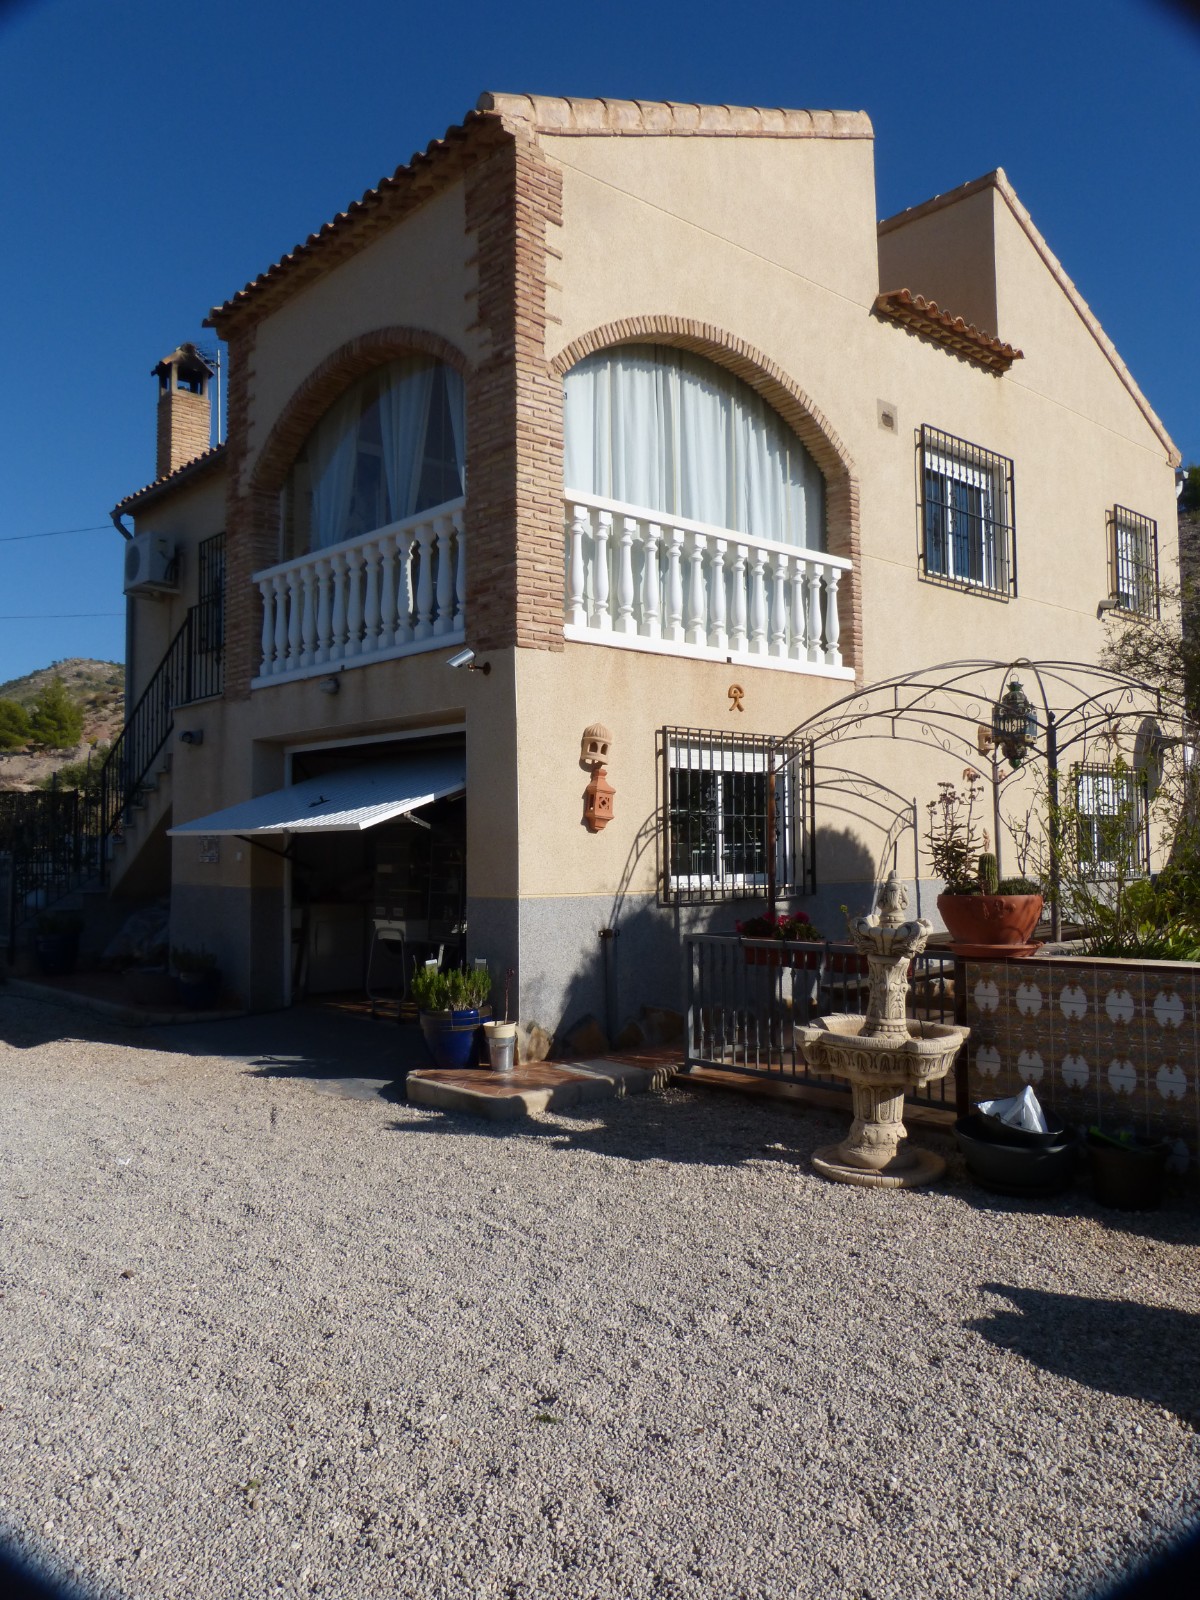 For sale: 3 bedroom house / villa in Fortuna, Costa Calida